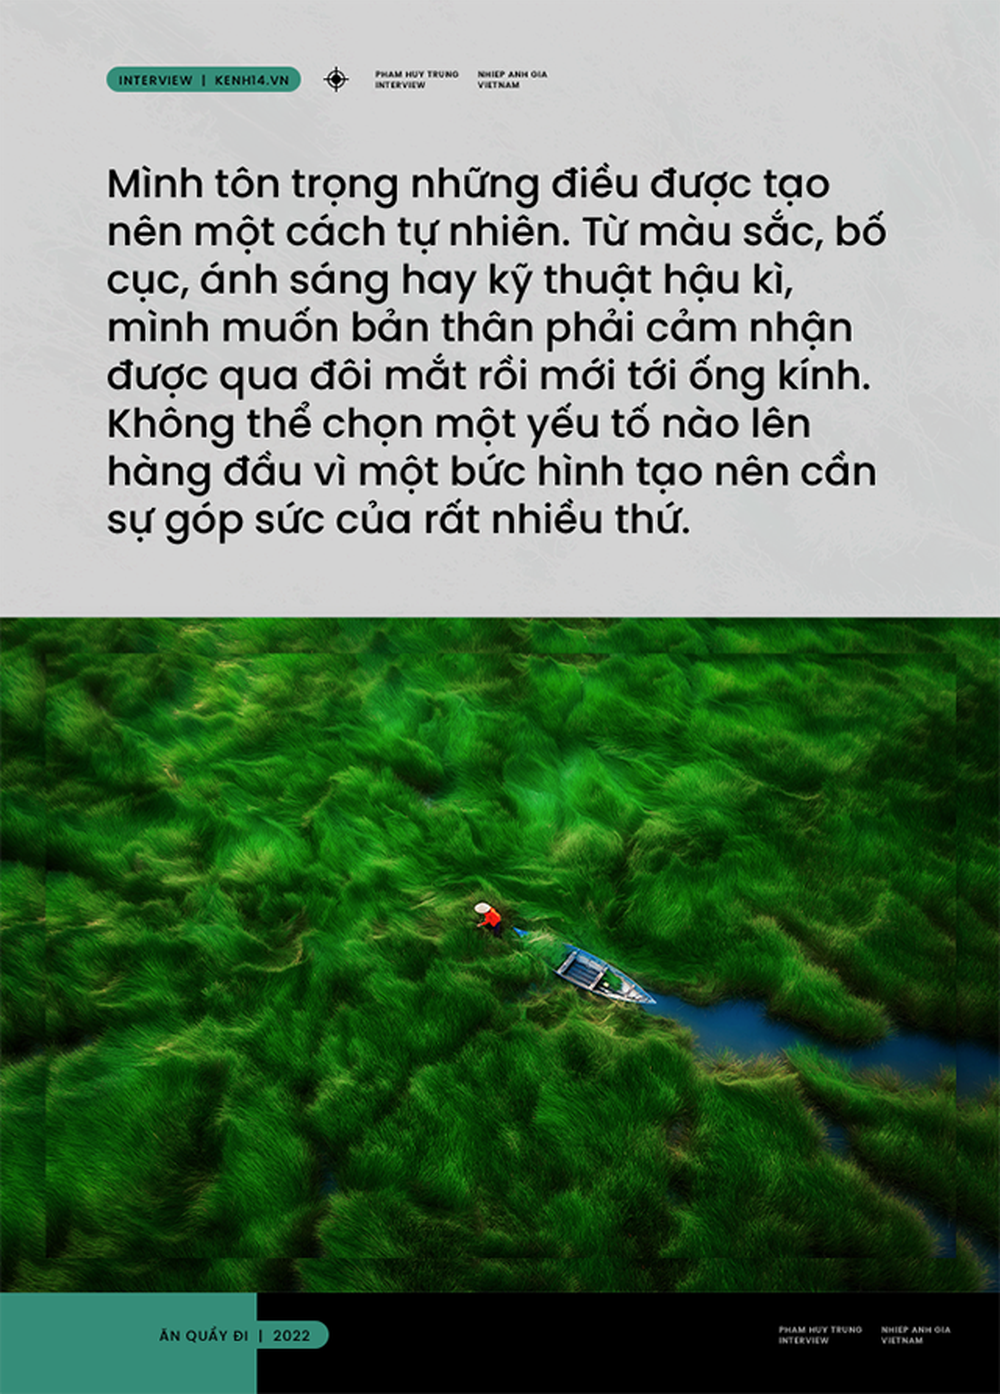 Việt Nam đẹp sững sờ qua những tuyệt tác flycam và tiết lộ của nhiếp ảnh gia chuyên đi săn cảnh đẹp đất nước hình chữ S - Ảnh 10.